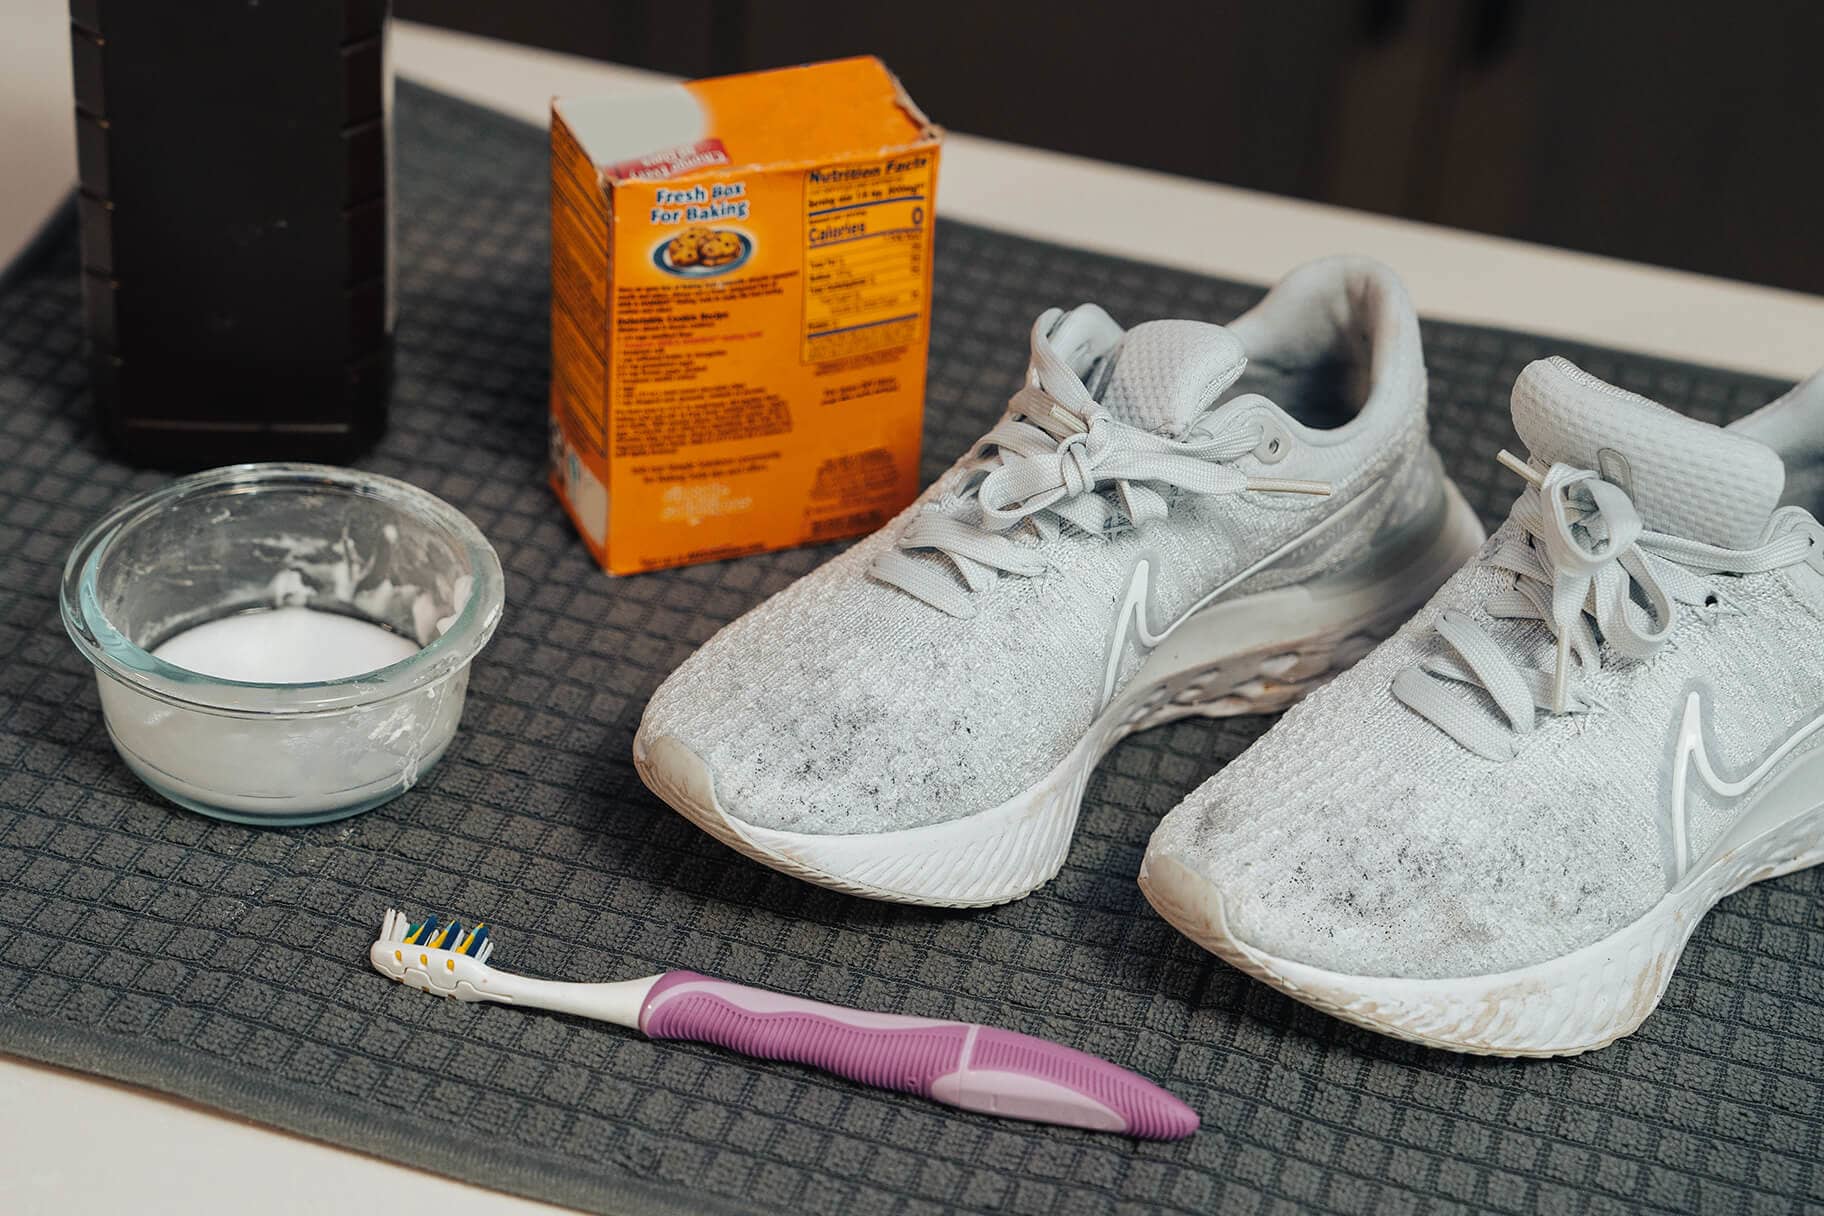 Cepillo para Limpieza de Zapatillas - Sneakers Care